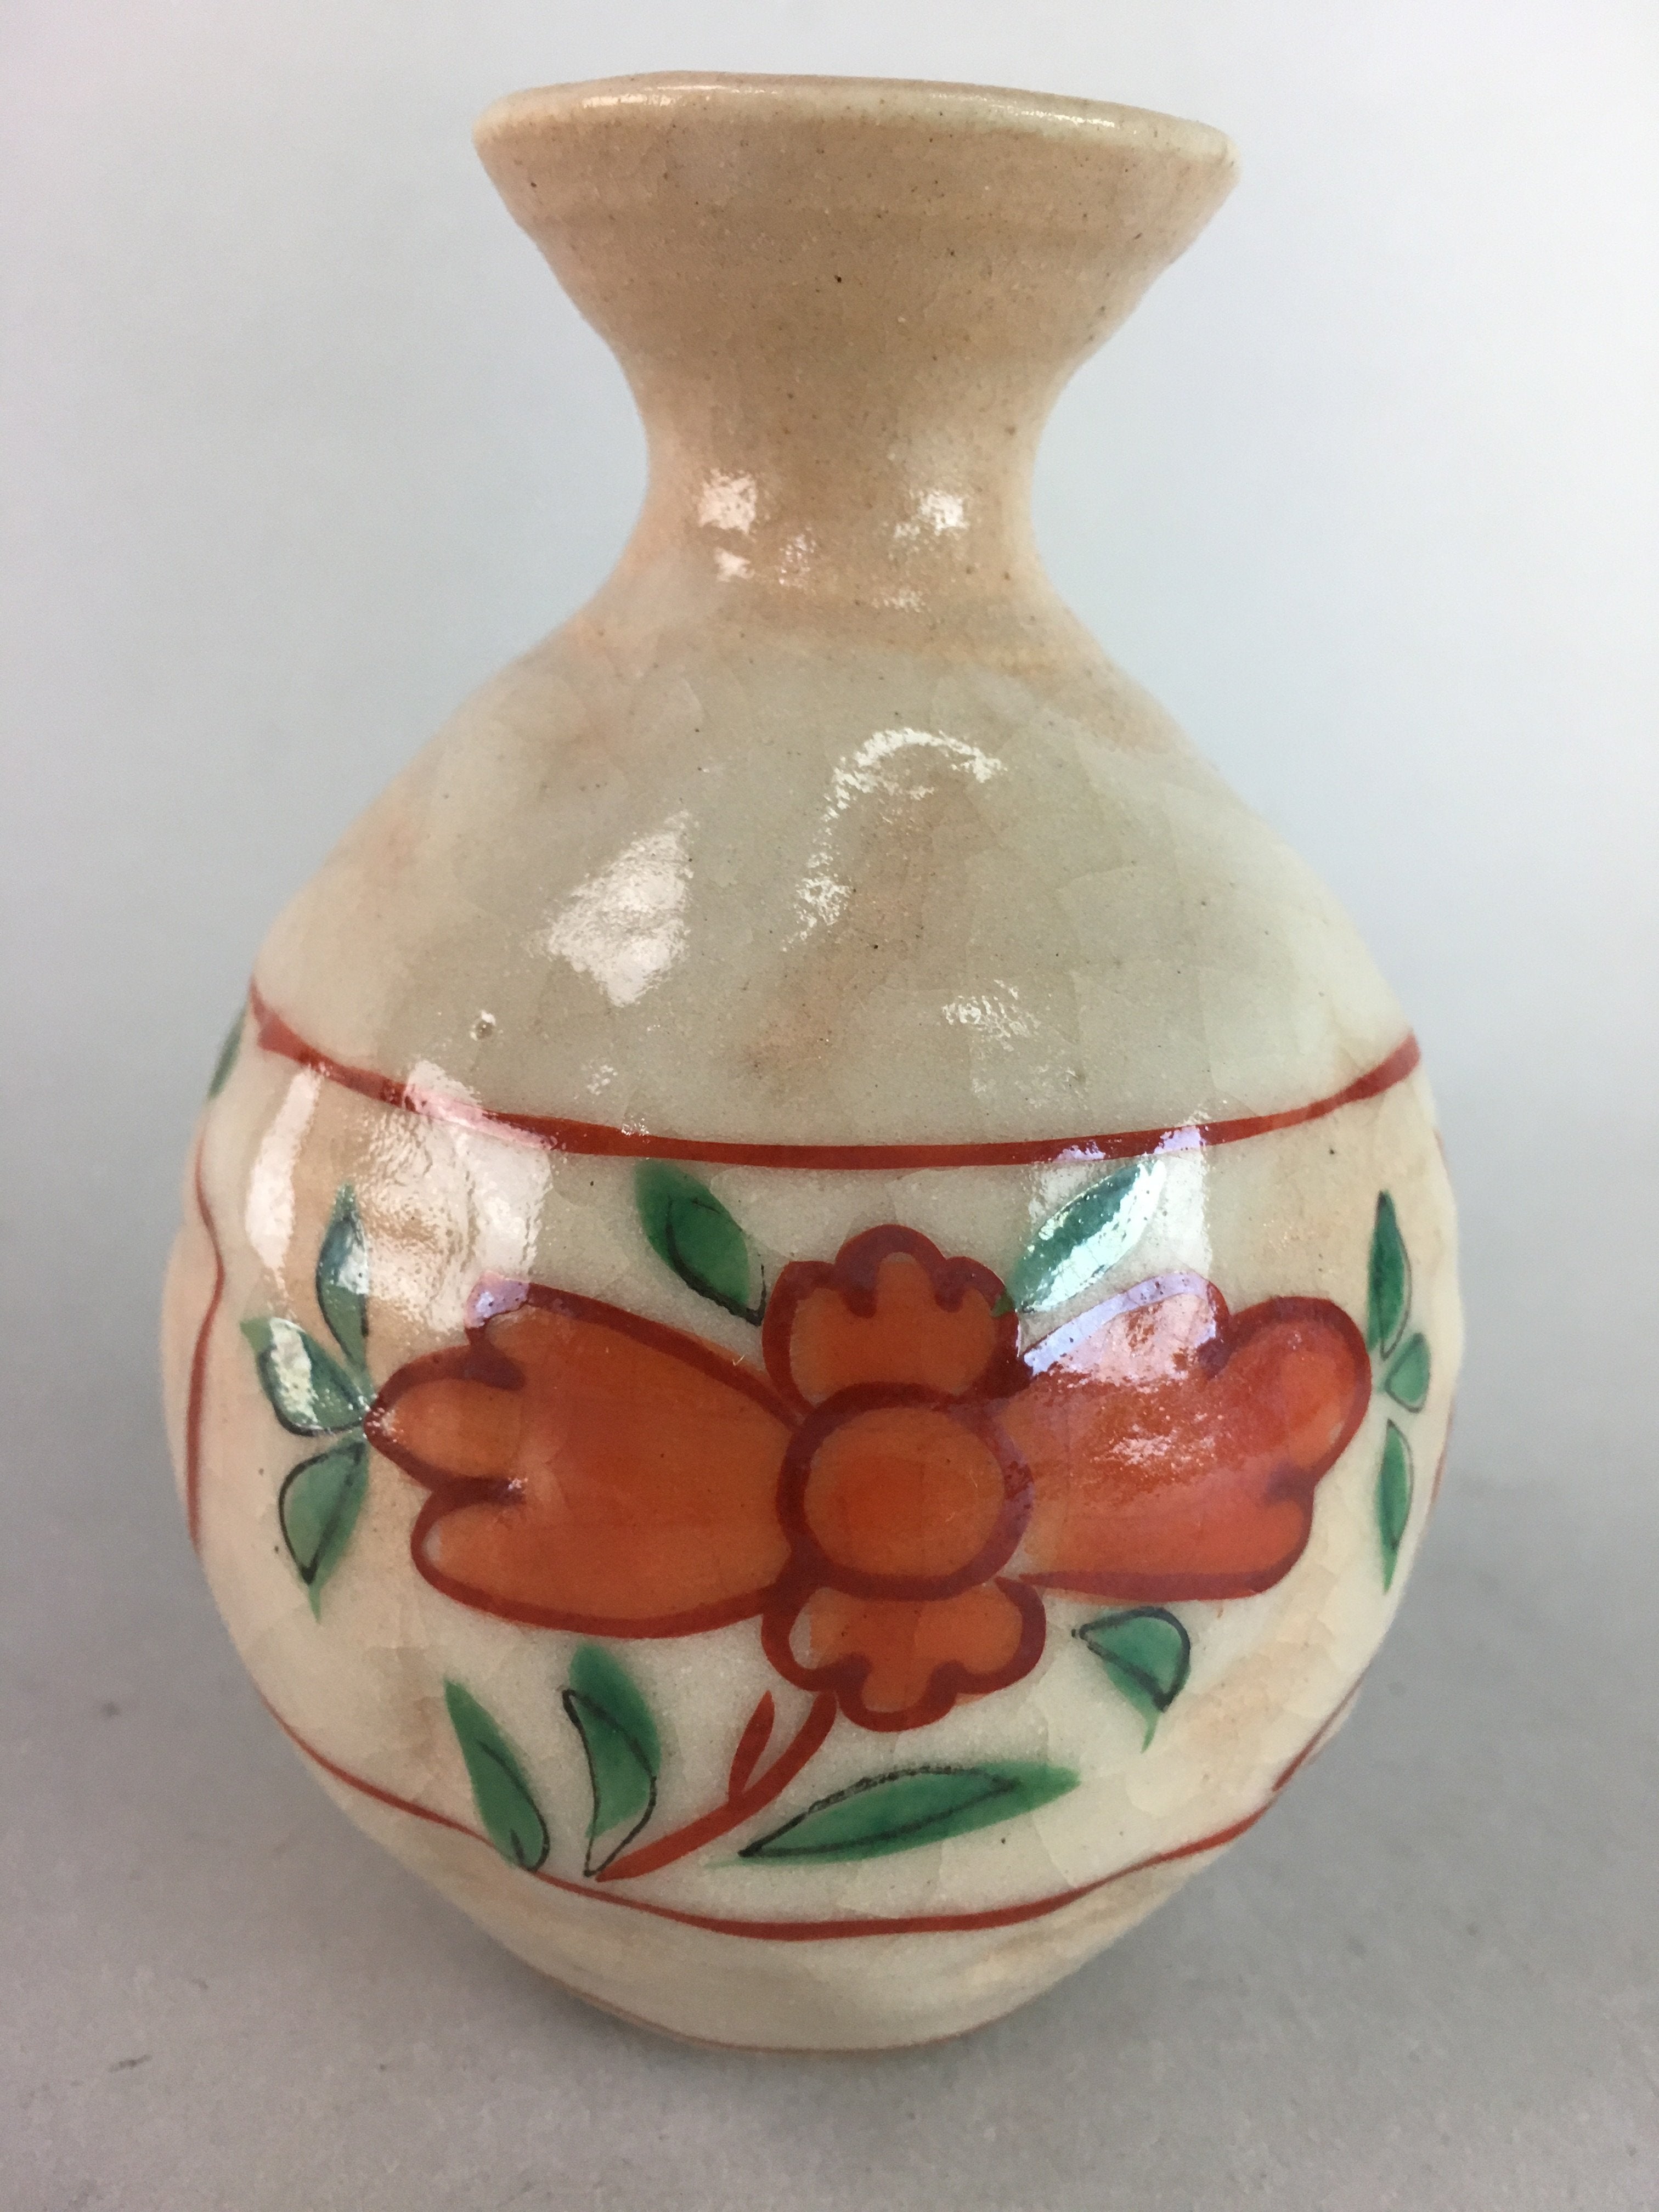 Japanese Ceramic Sake Bottle Vtg Floral Tokkuri Red Green Crackle Glaze TS163